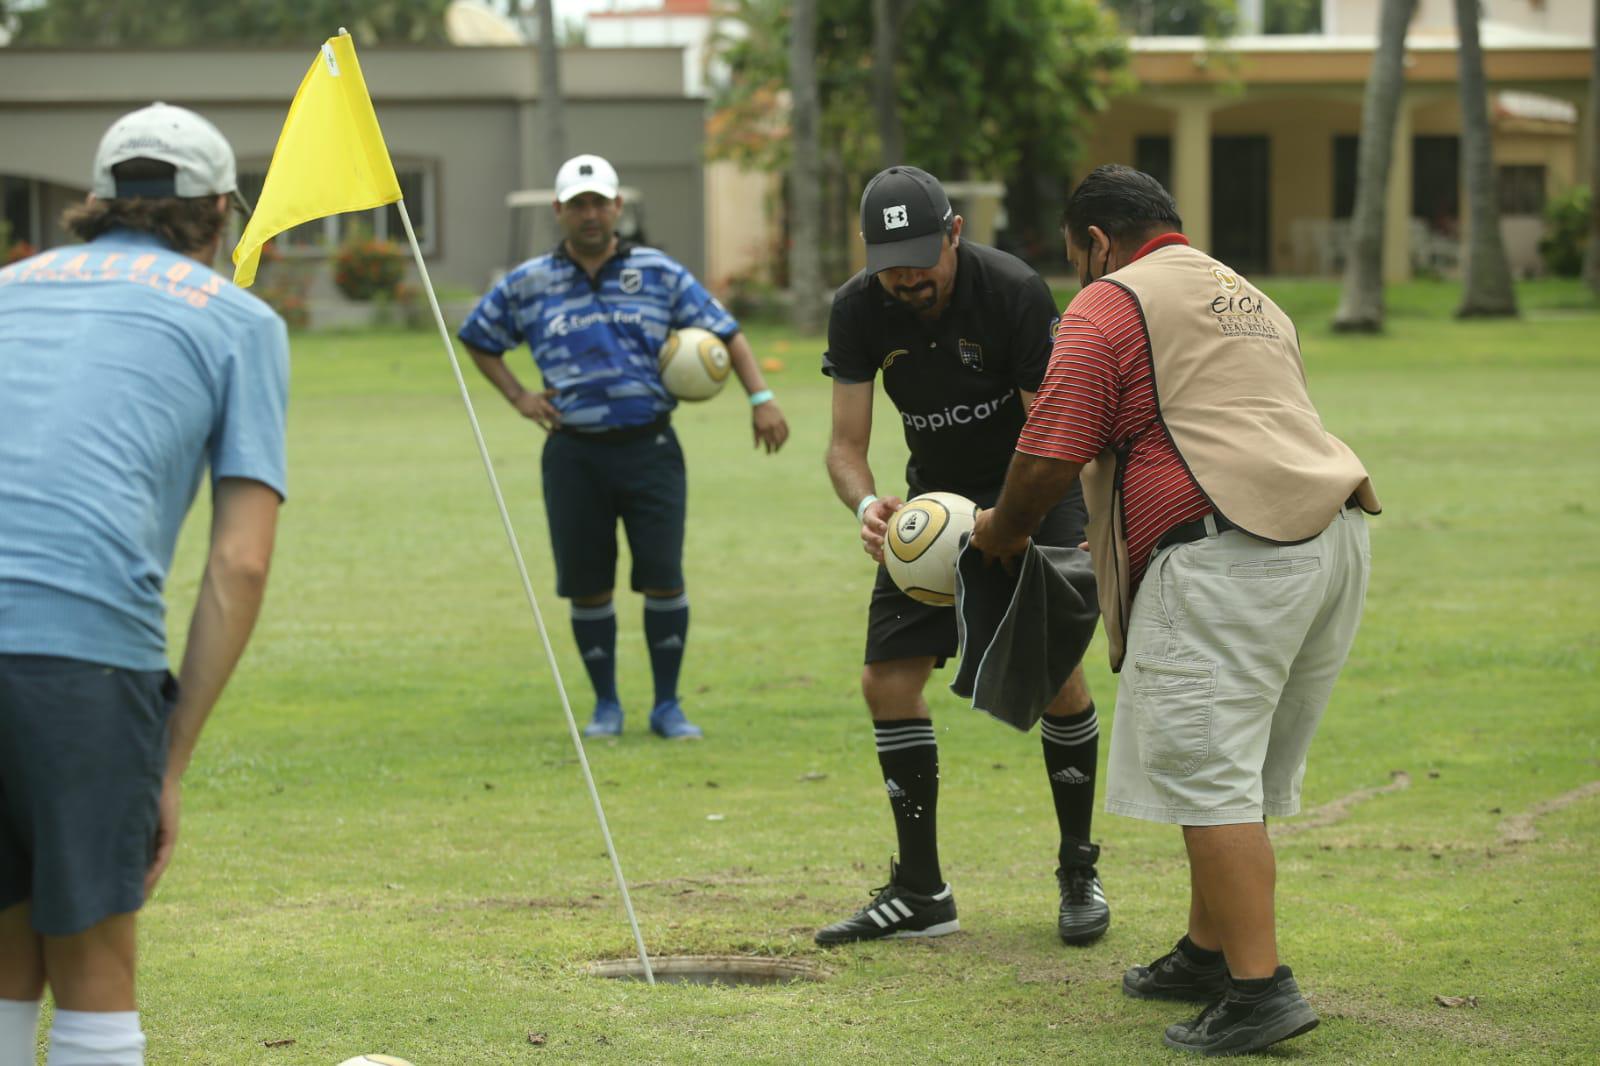 $!Jalisciense Gabriel García conquista el Nacional de Footgolf realizado en Mazatlán